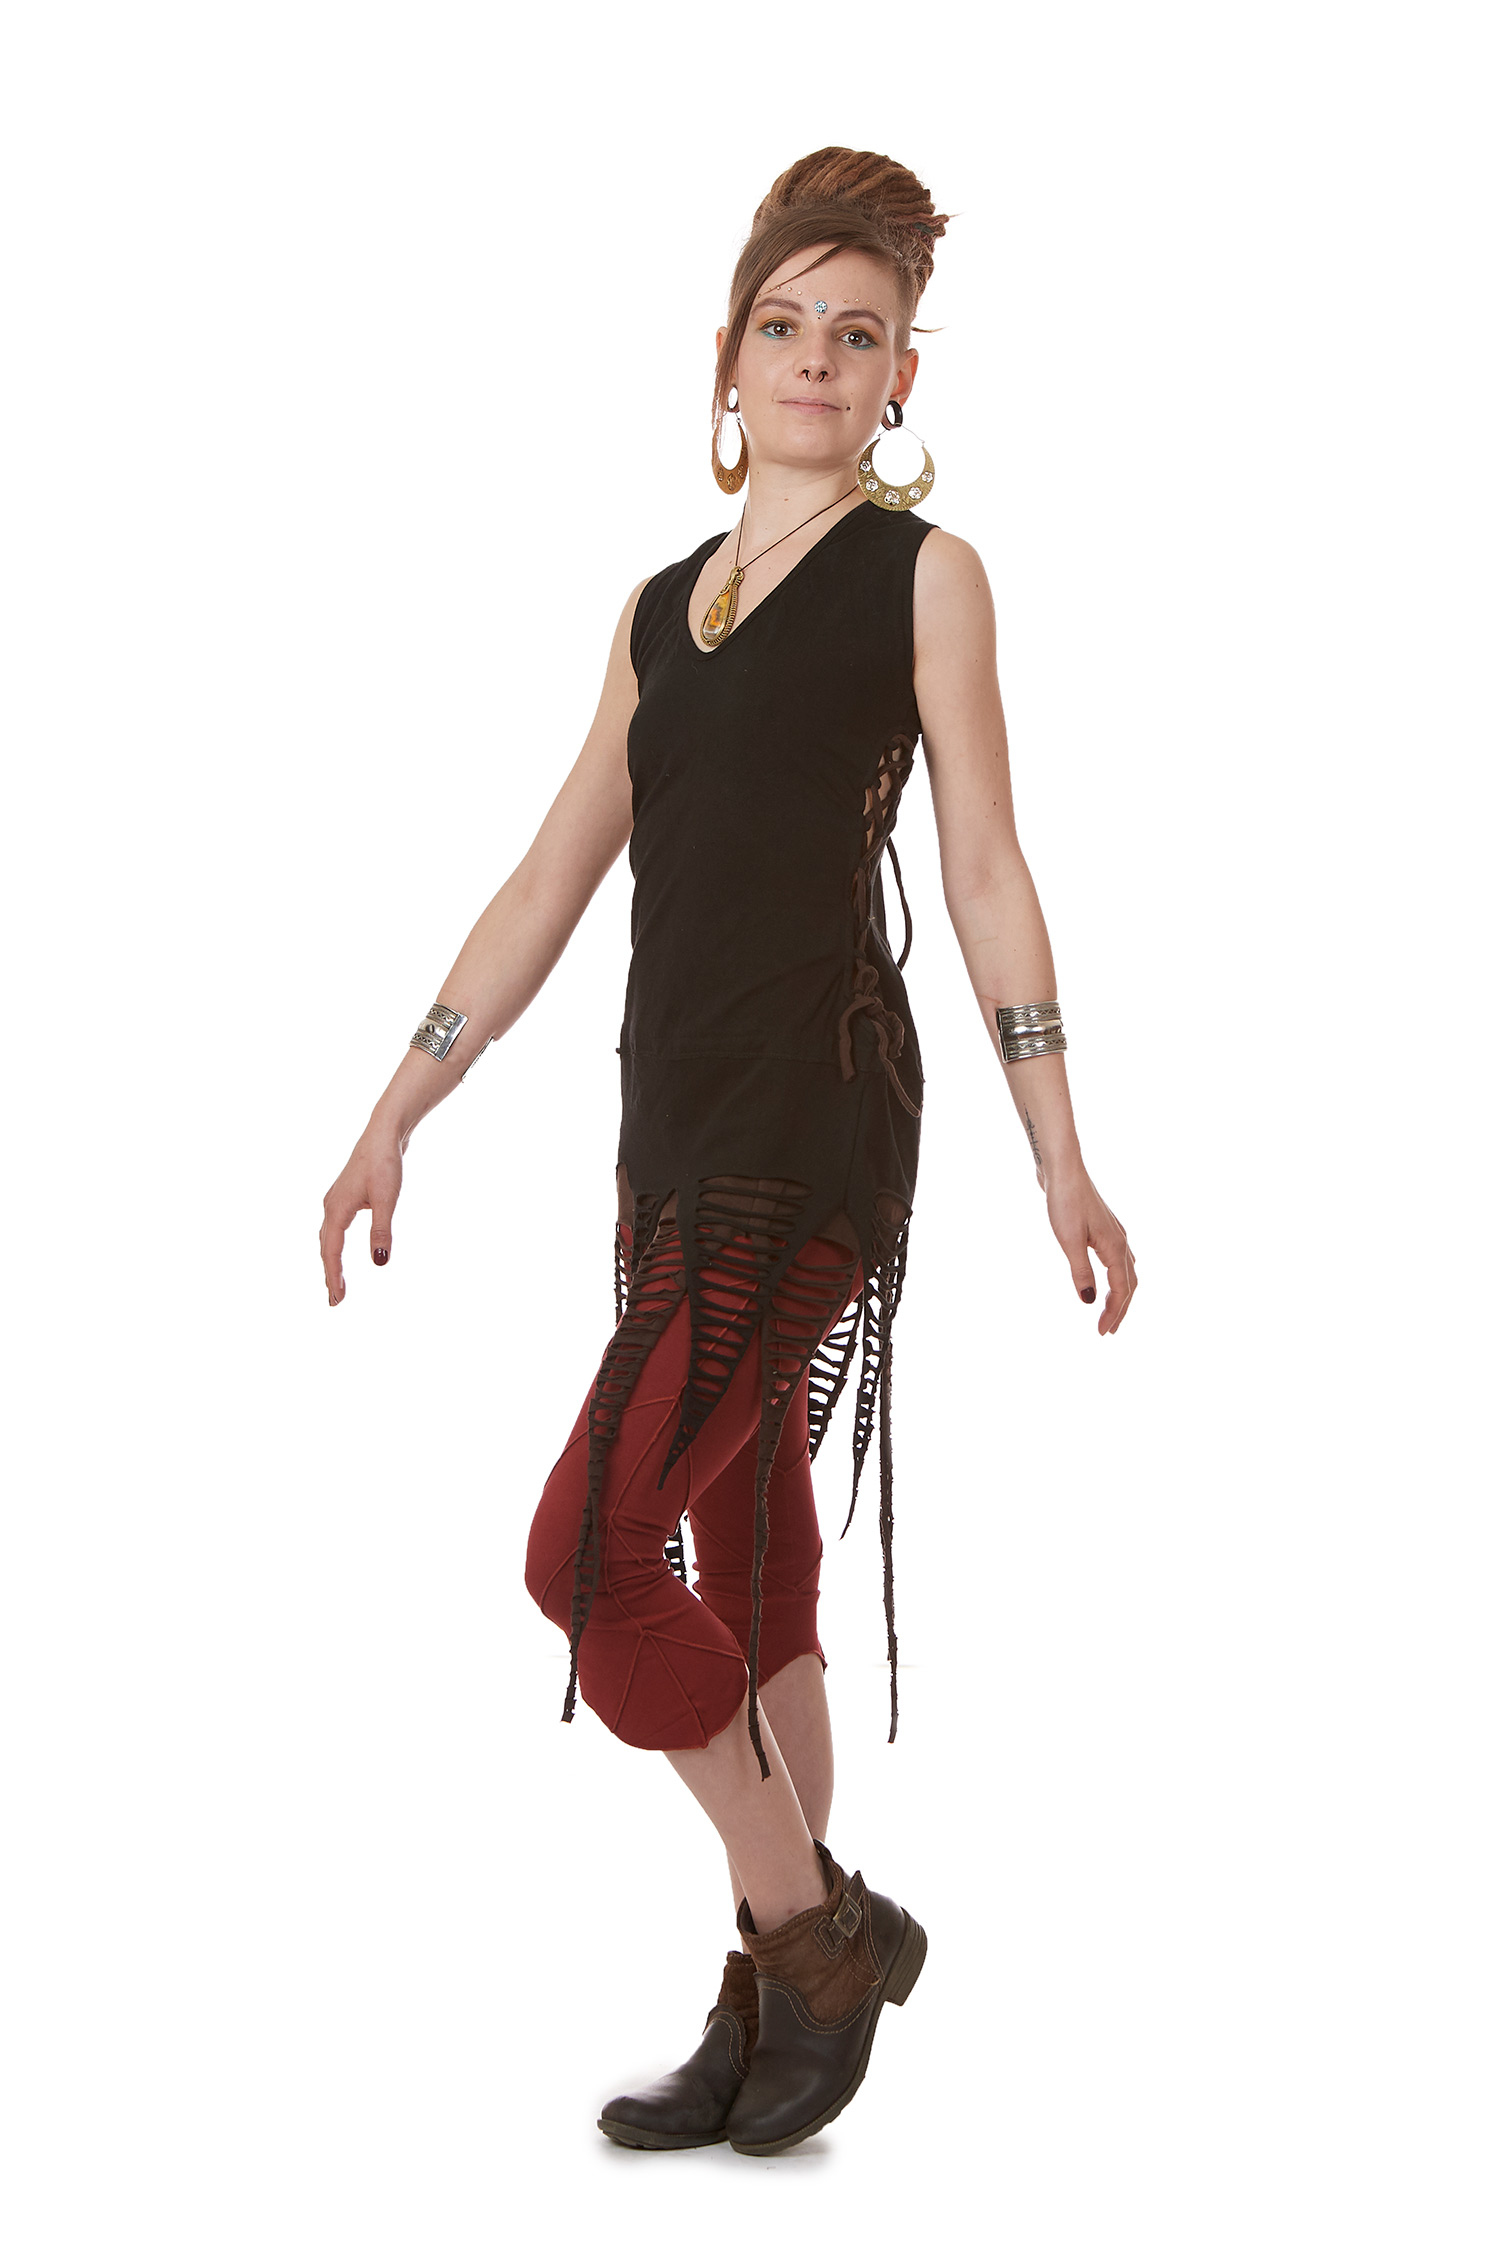 Psy Trance Clothing Goa Doof Pixie Dress | Altshop UK